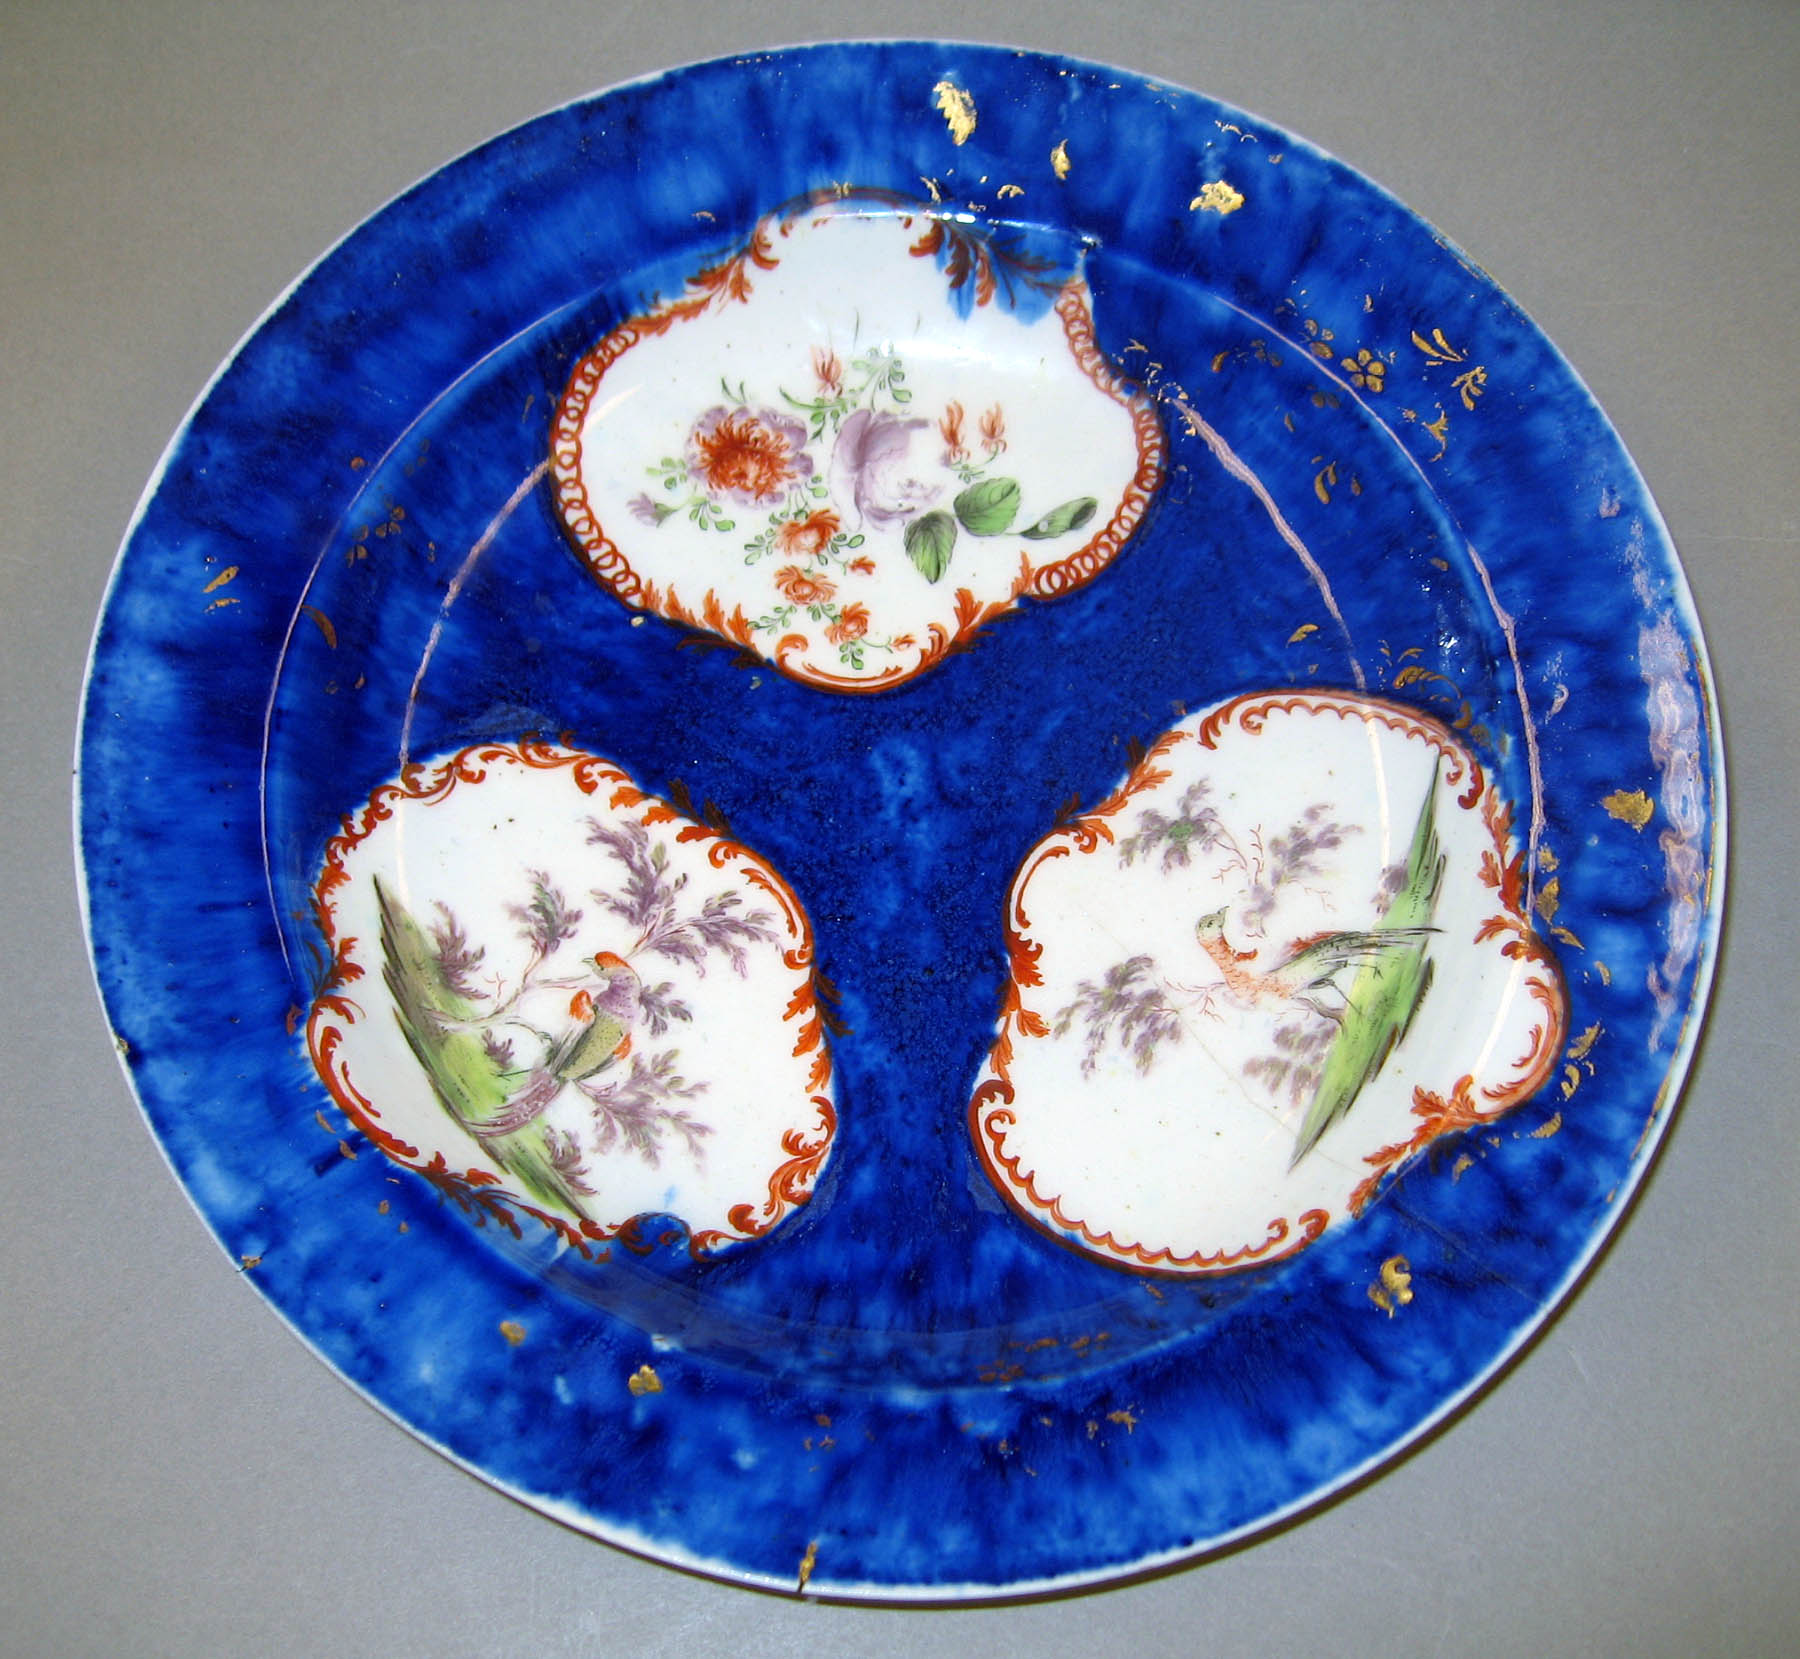 Ceramics - Plate or bowl